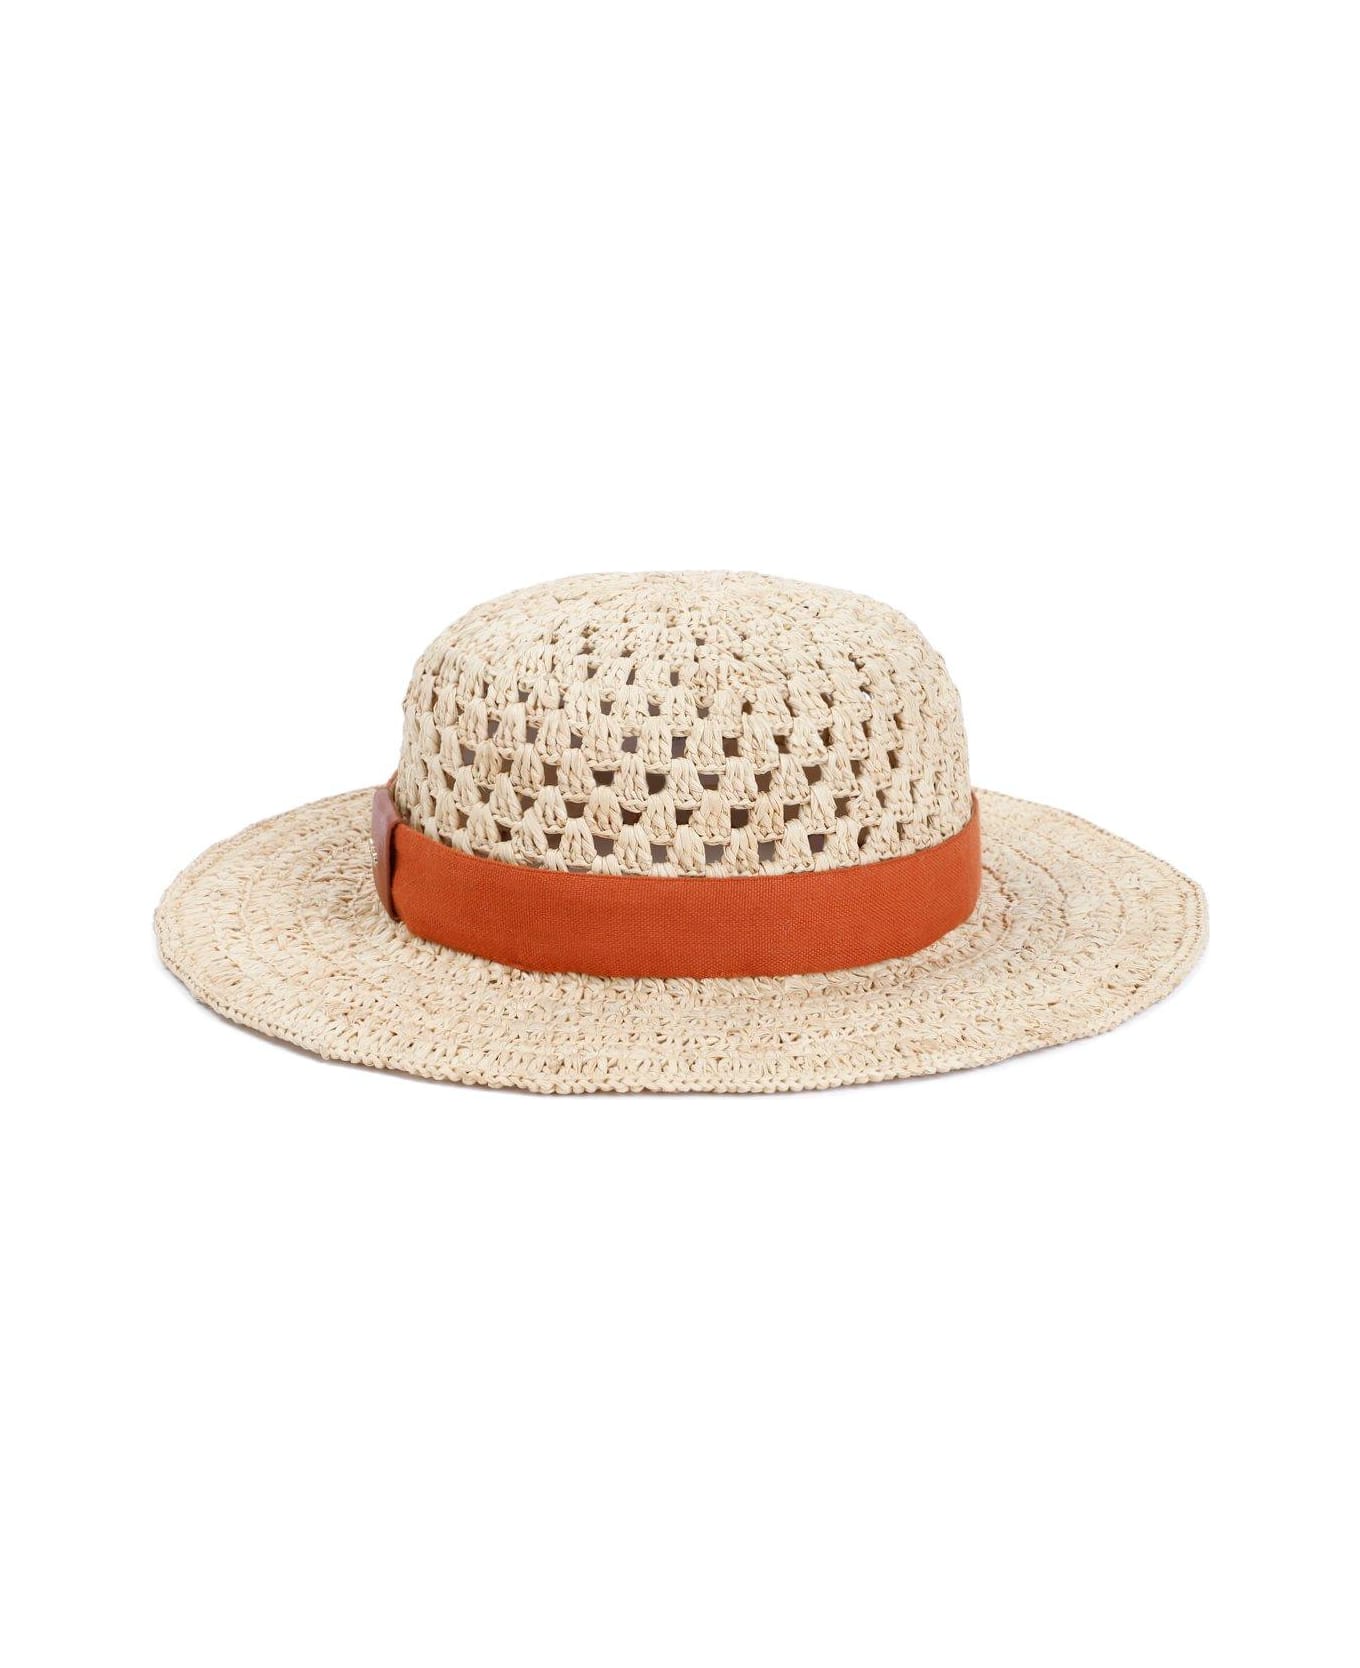 Chloé Crochet Raffia TRUCKER Hat - Beige